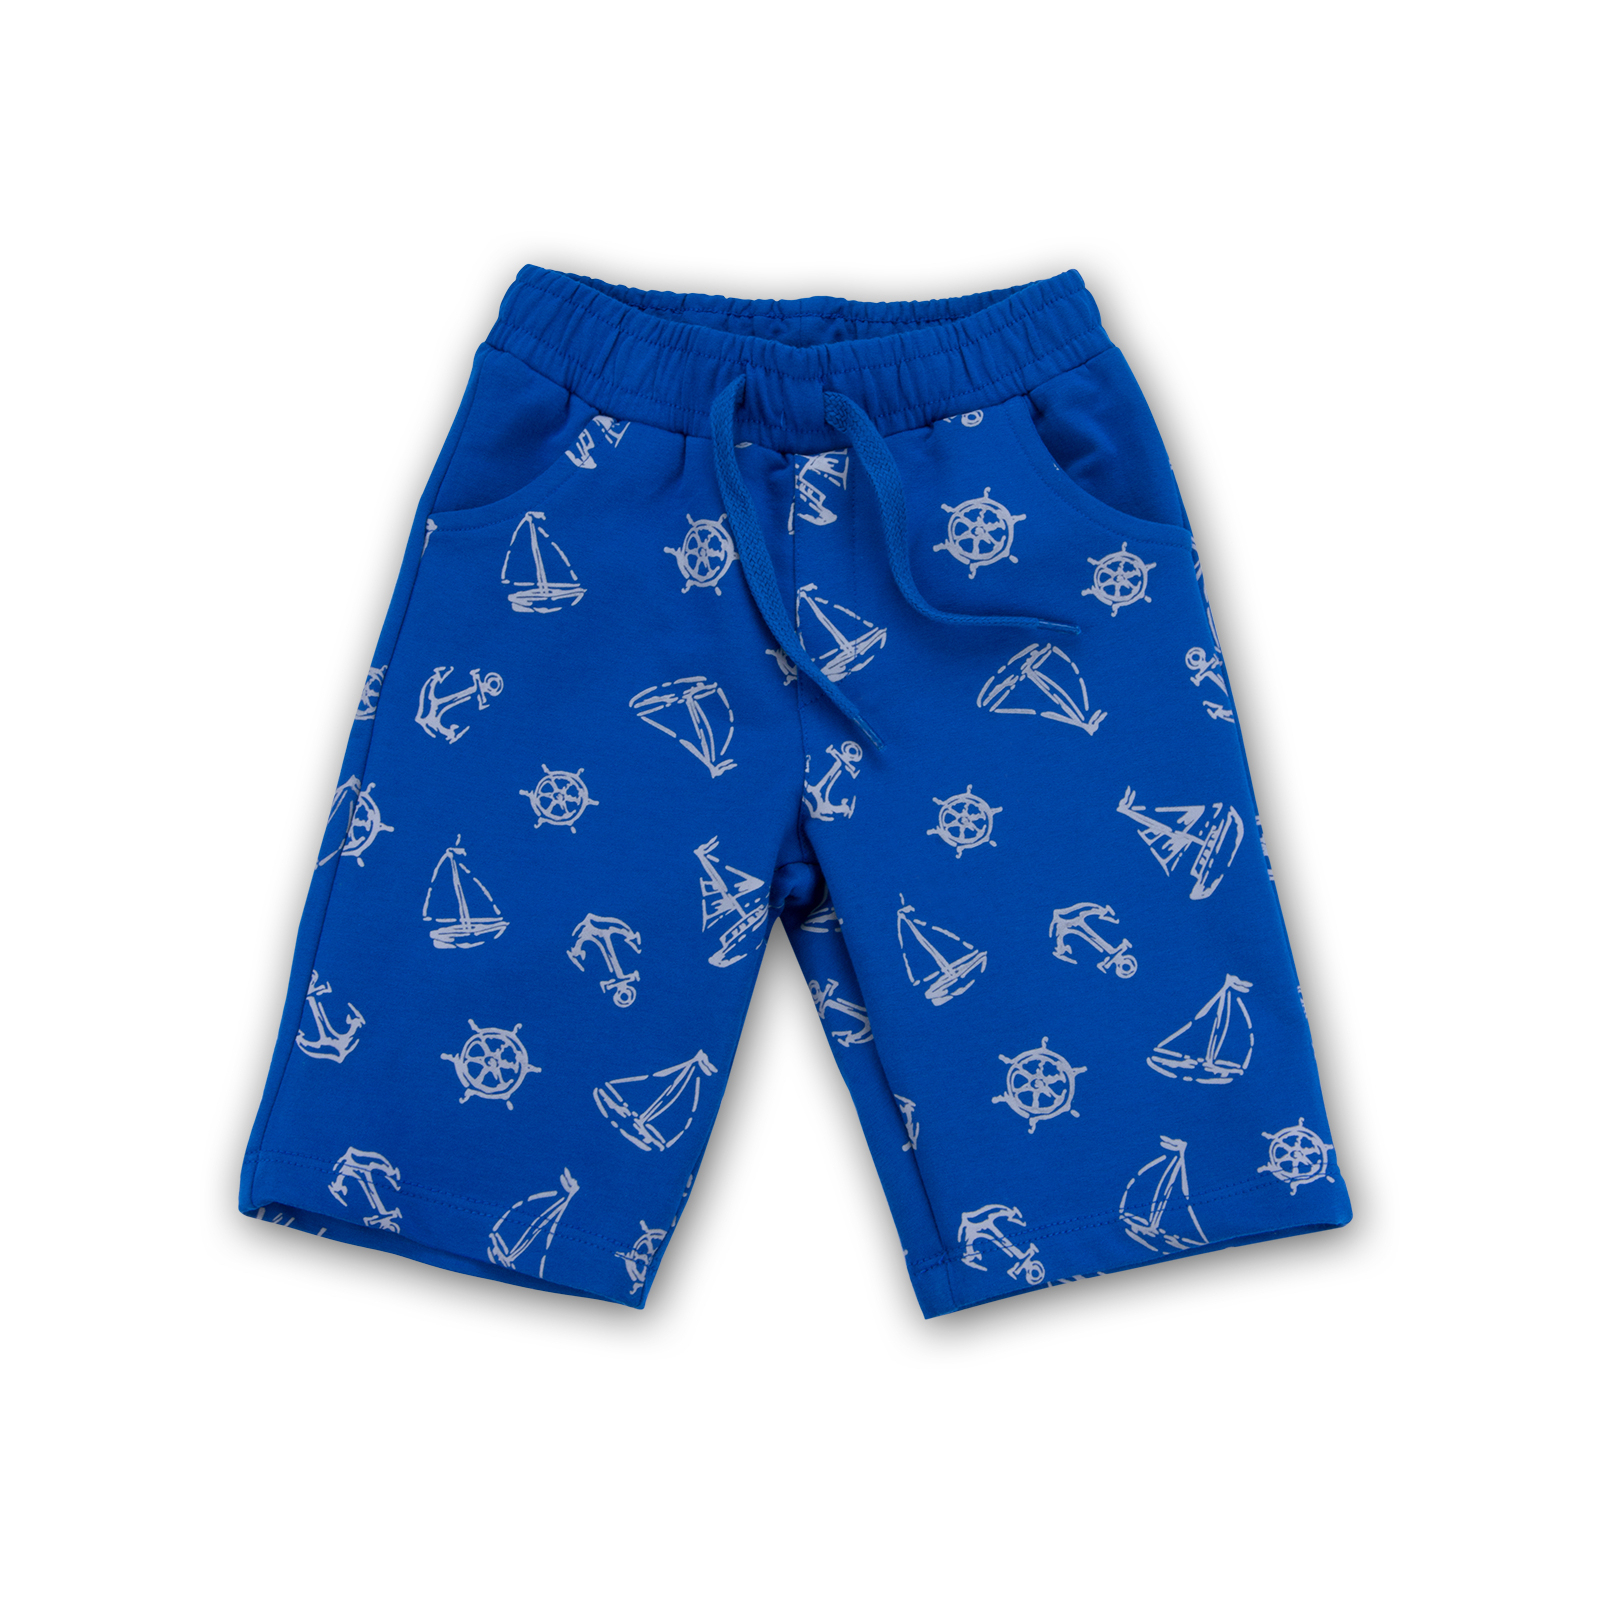 Набор детской одежды E&H с корабликами "I'm the captain" (8306-104B-blue) изображение 3